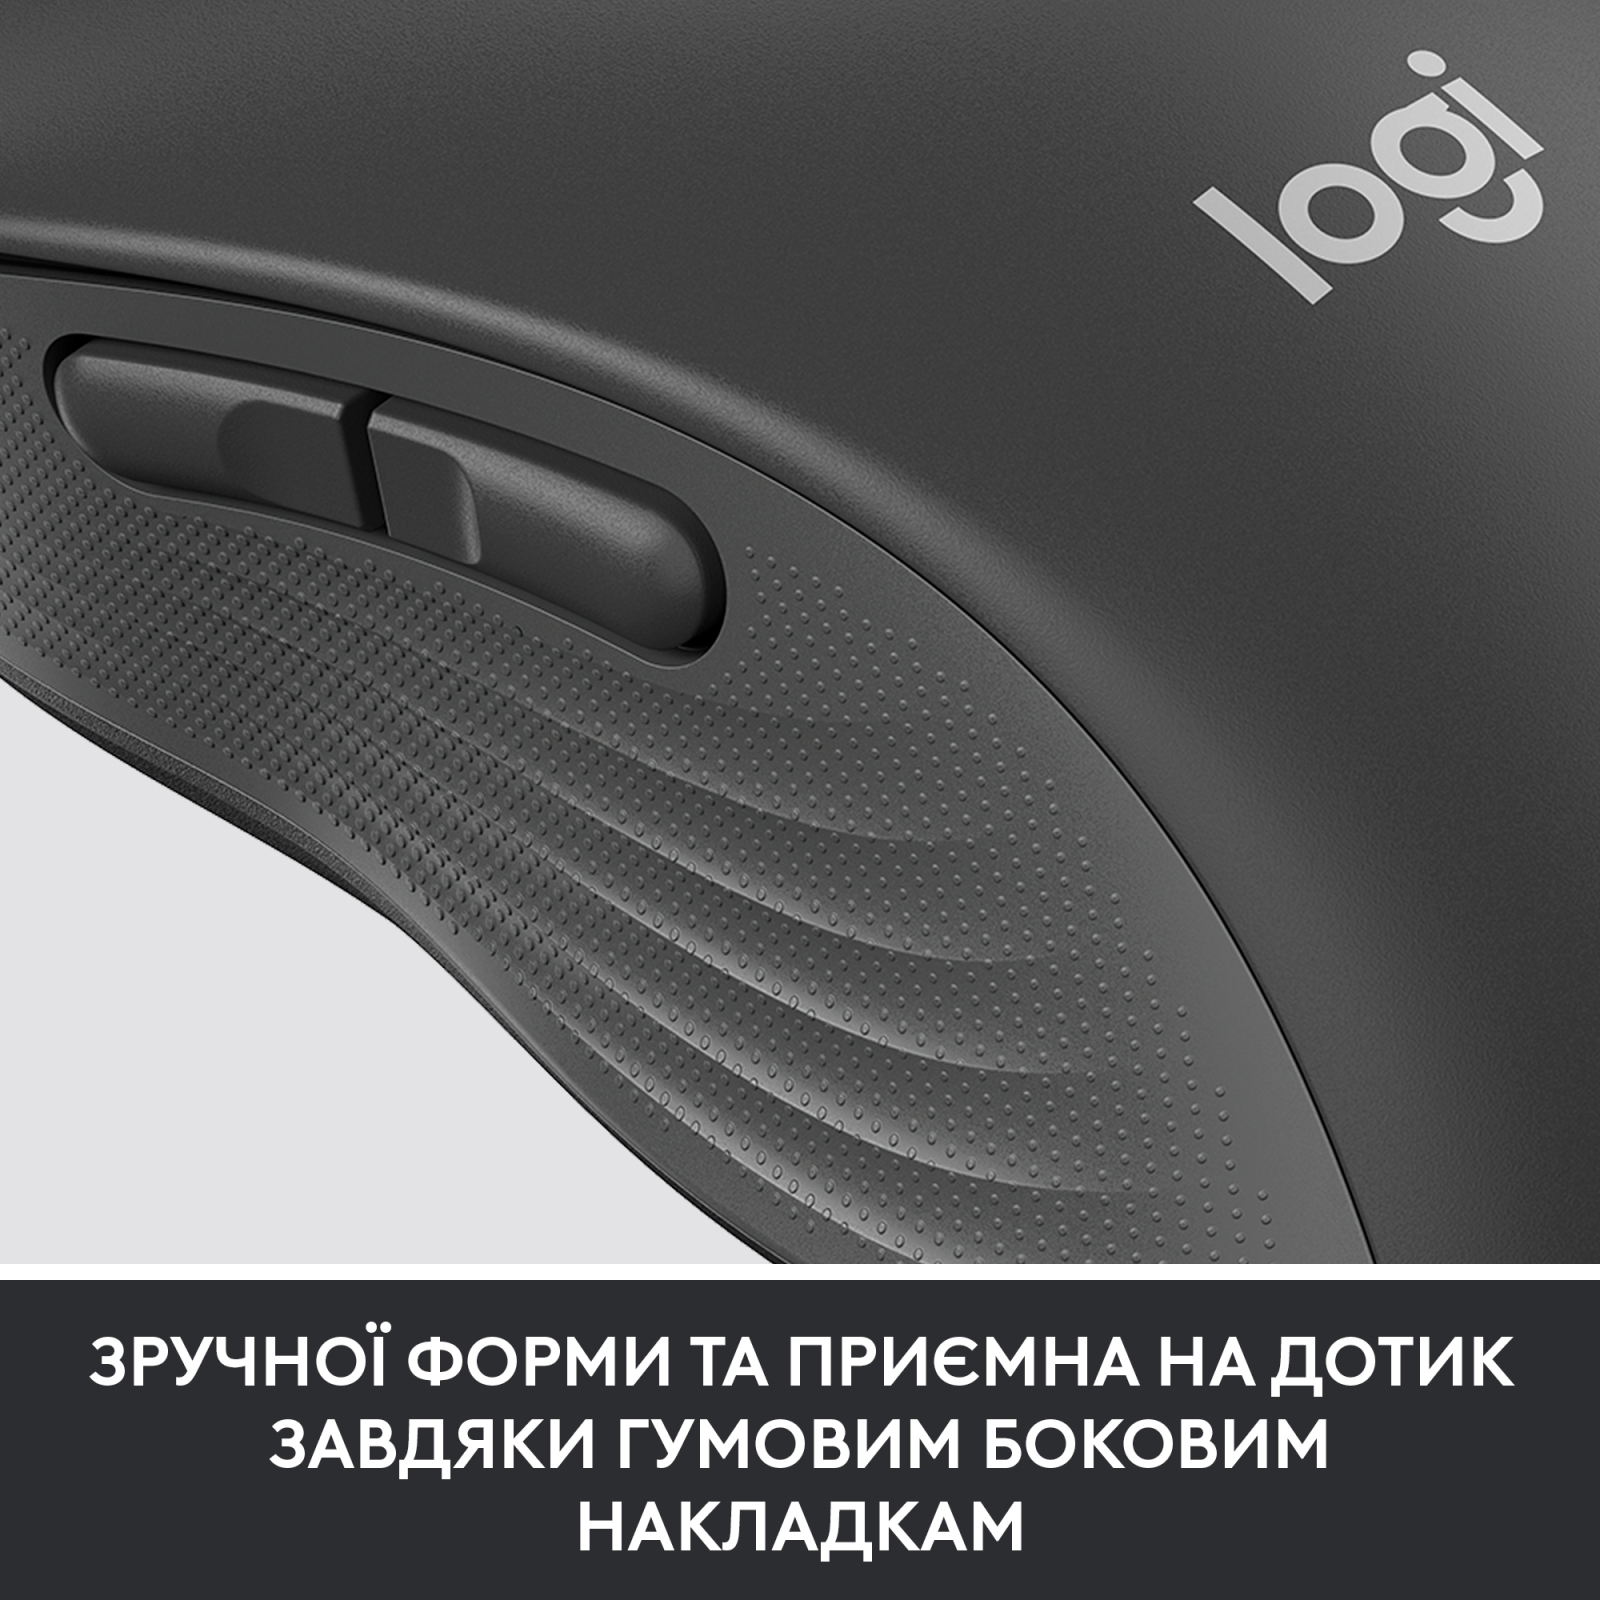 Мышка Logitech Signature M650 Wireless for Business Off-White (910-006275) изображение 8